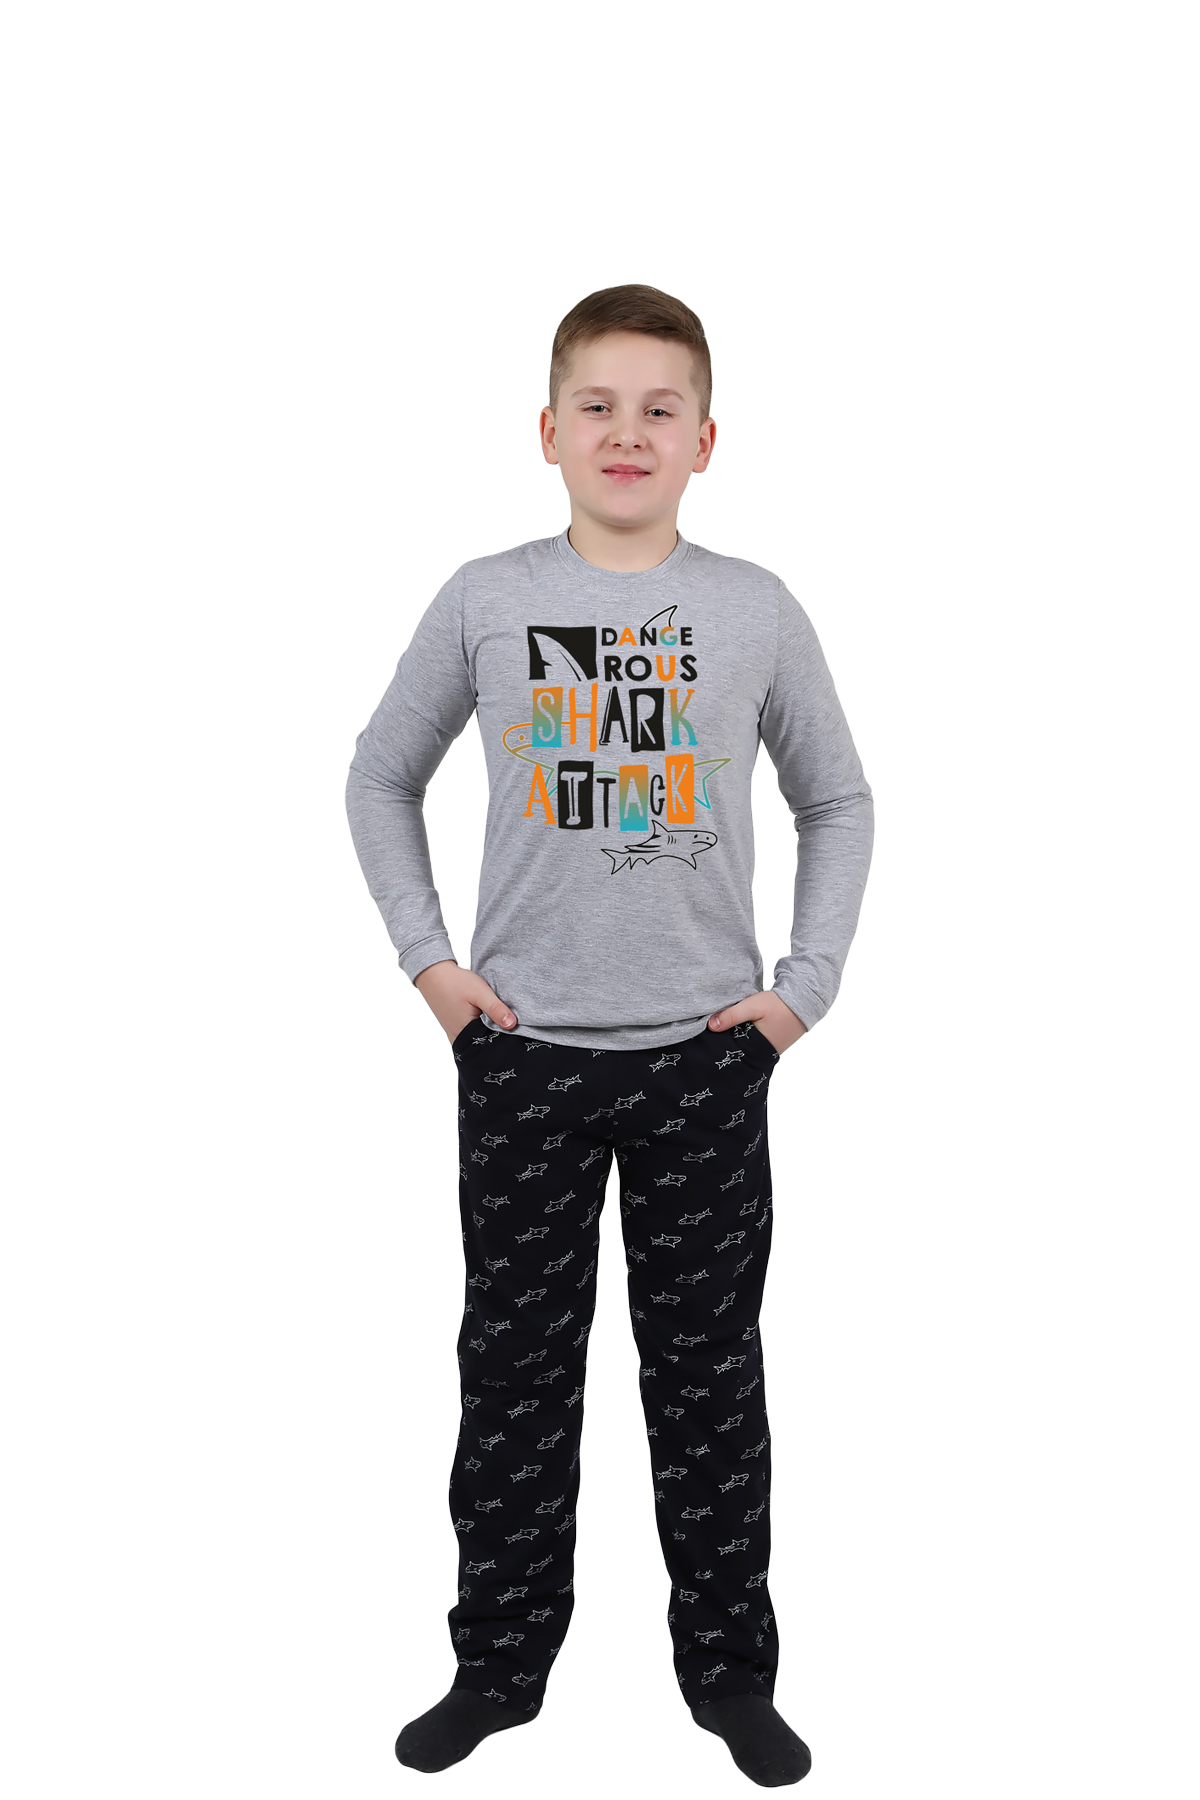 Детская пижама Акула Цвет: Серый Меланж (11 лет), размер 11 лет otj636452 Детская пижама Акула Цвет: Серый Меланж (11 лет) - фото 1